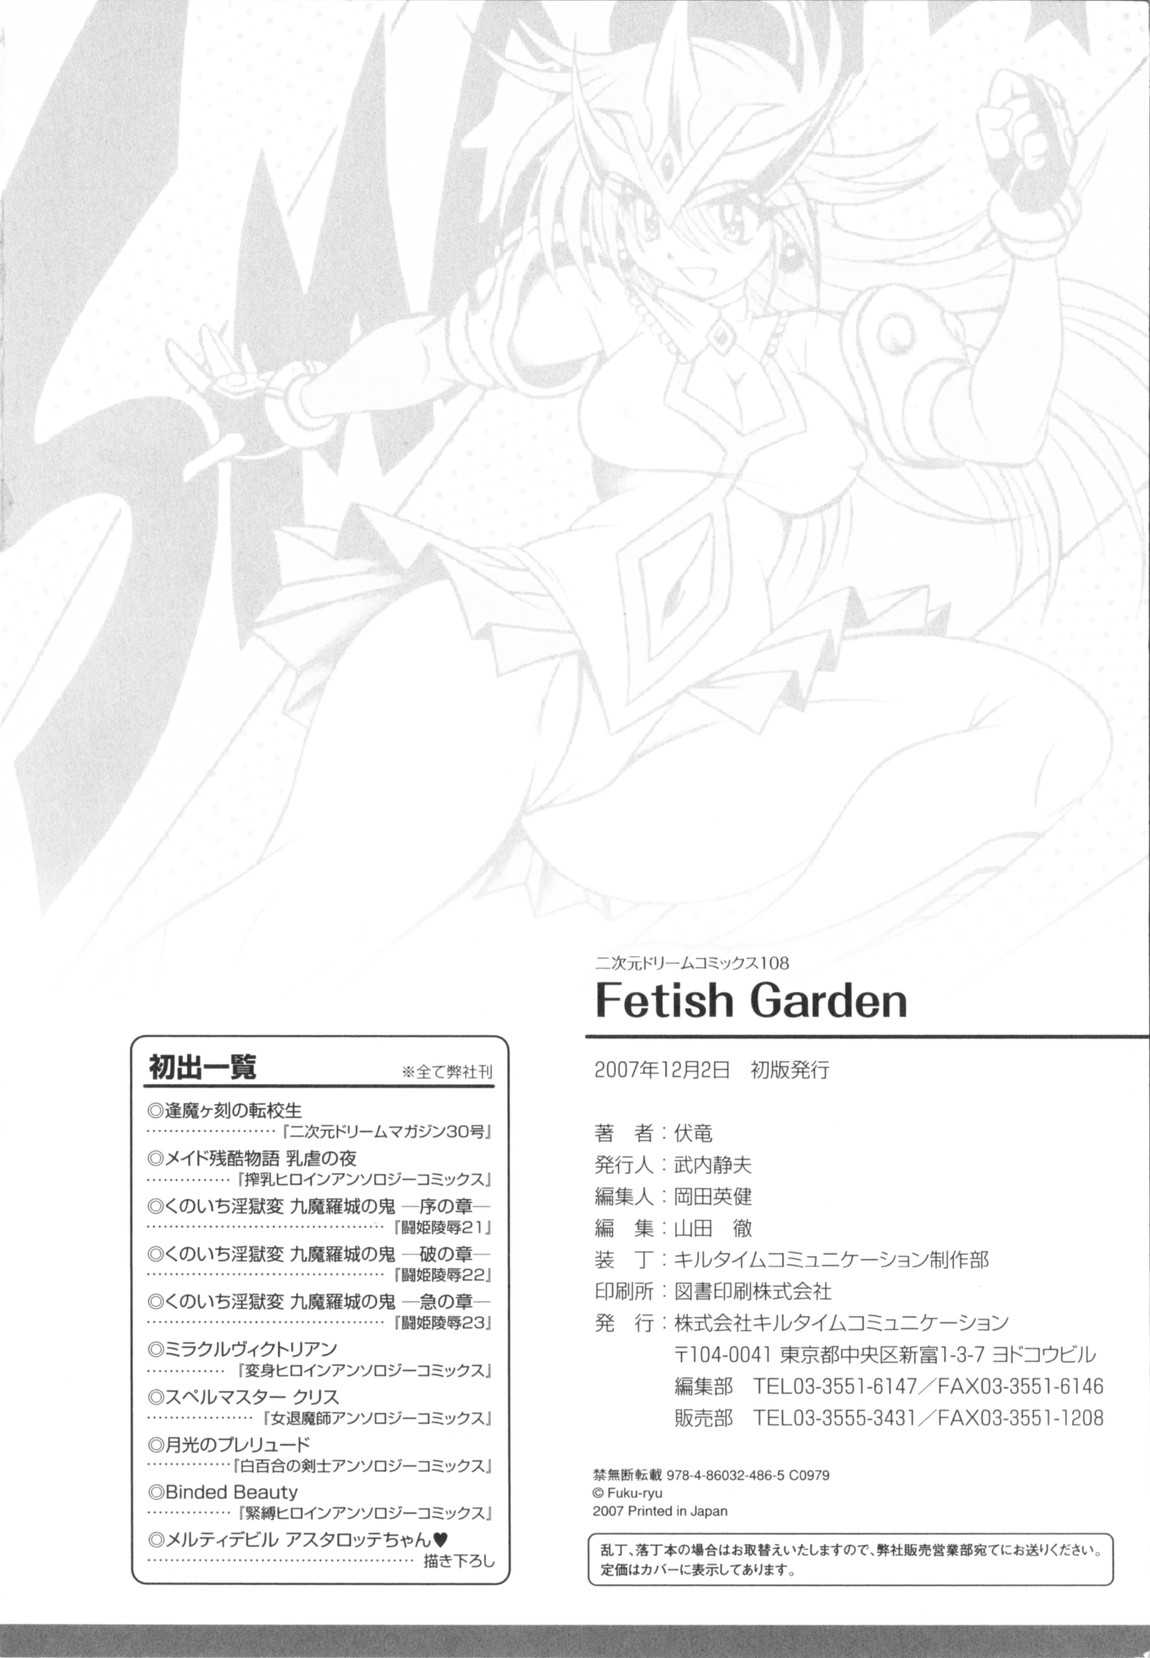 [Fuku-ryu]Fetish Garden [伏竜]Fetish Garden